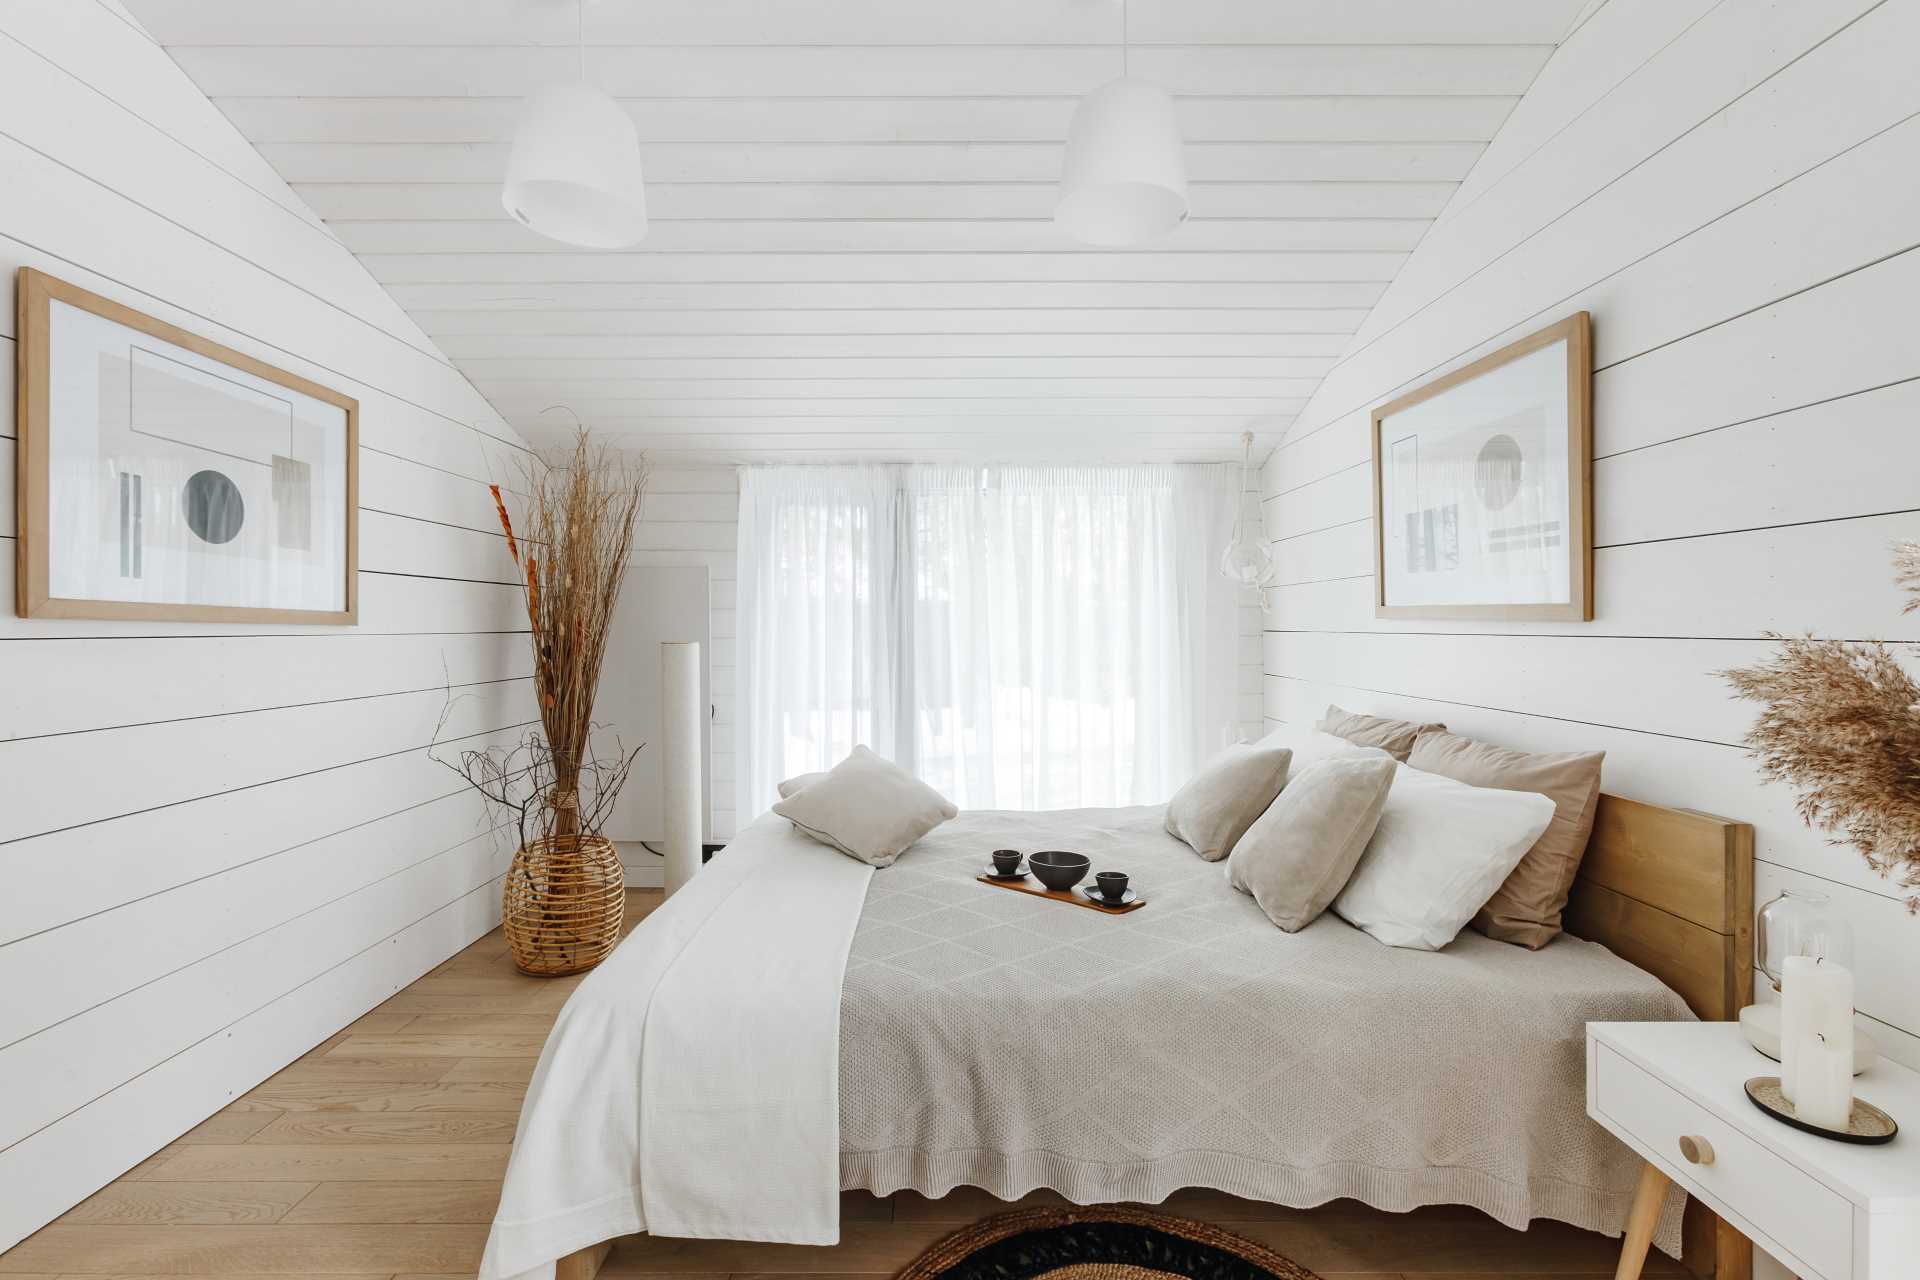 یک اتاق خواب سفید و چوبی معاصر.